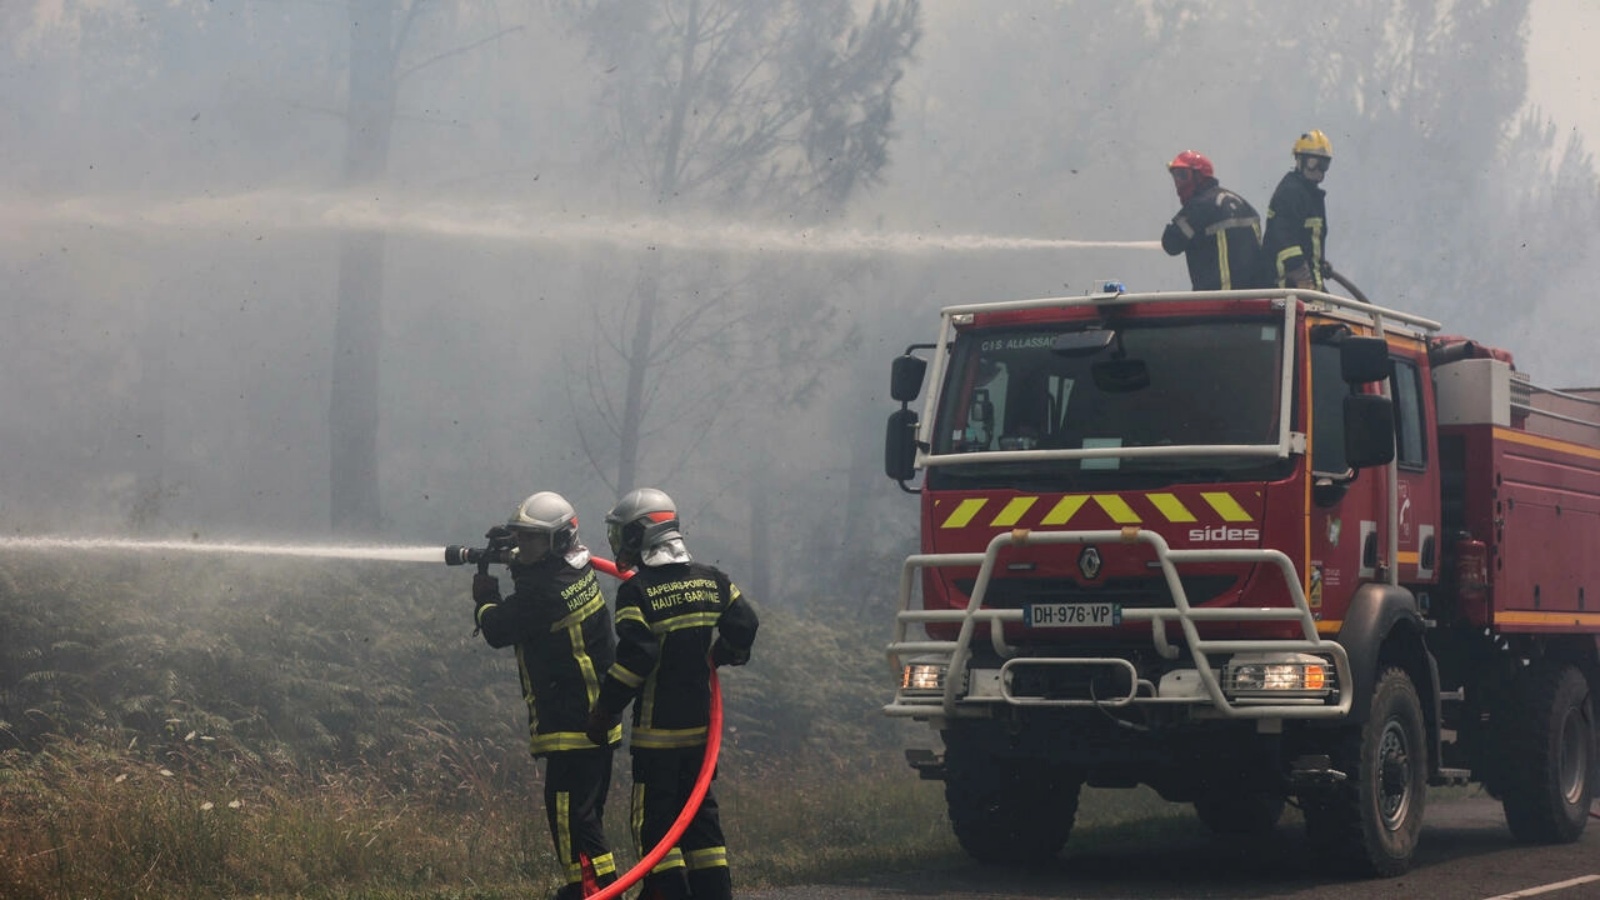 عناصر إطفاء فرنسيون يحاولون إطفاء حريق في منطقة جيروند